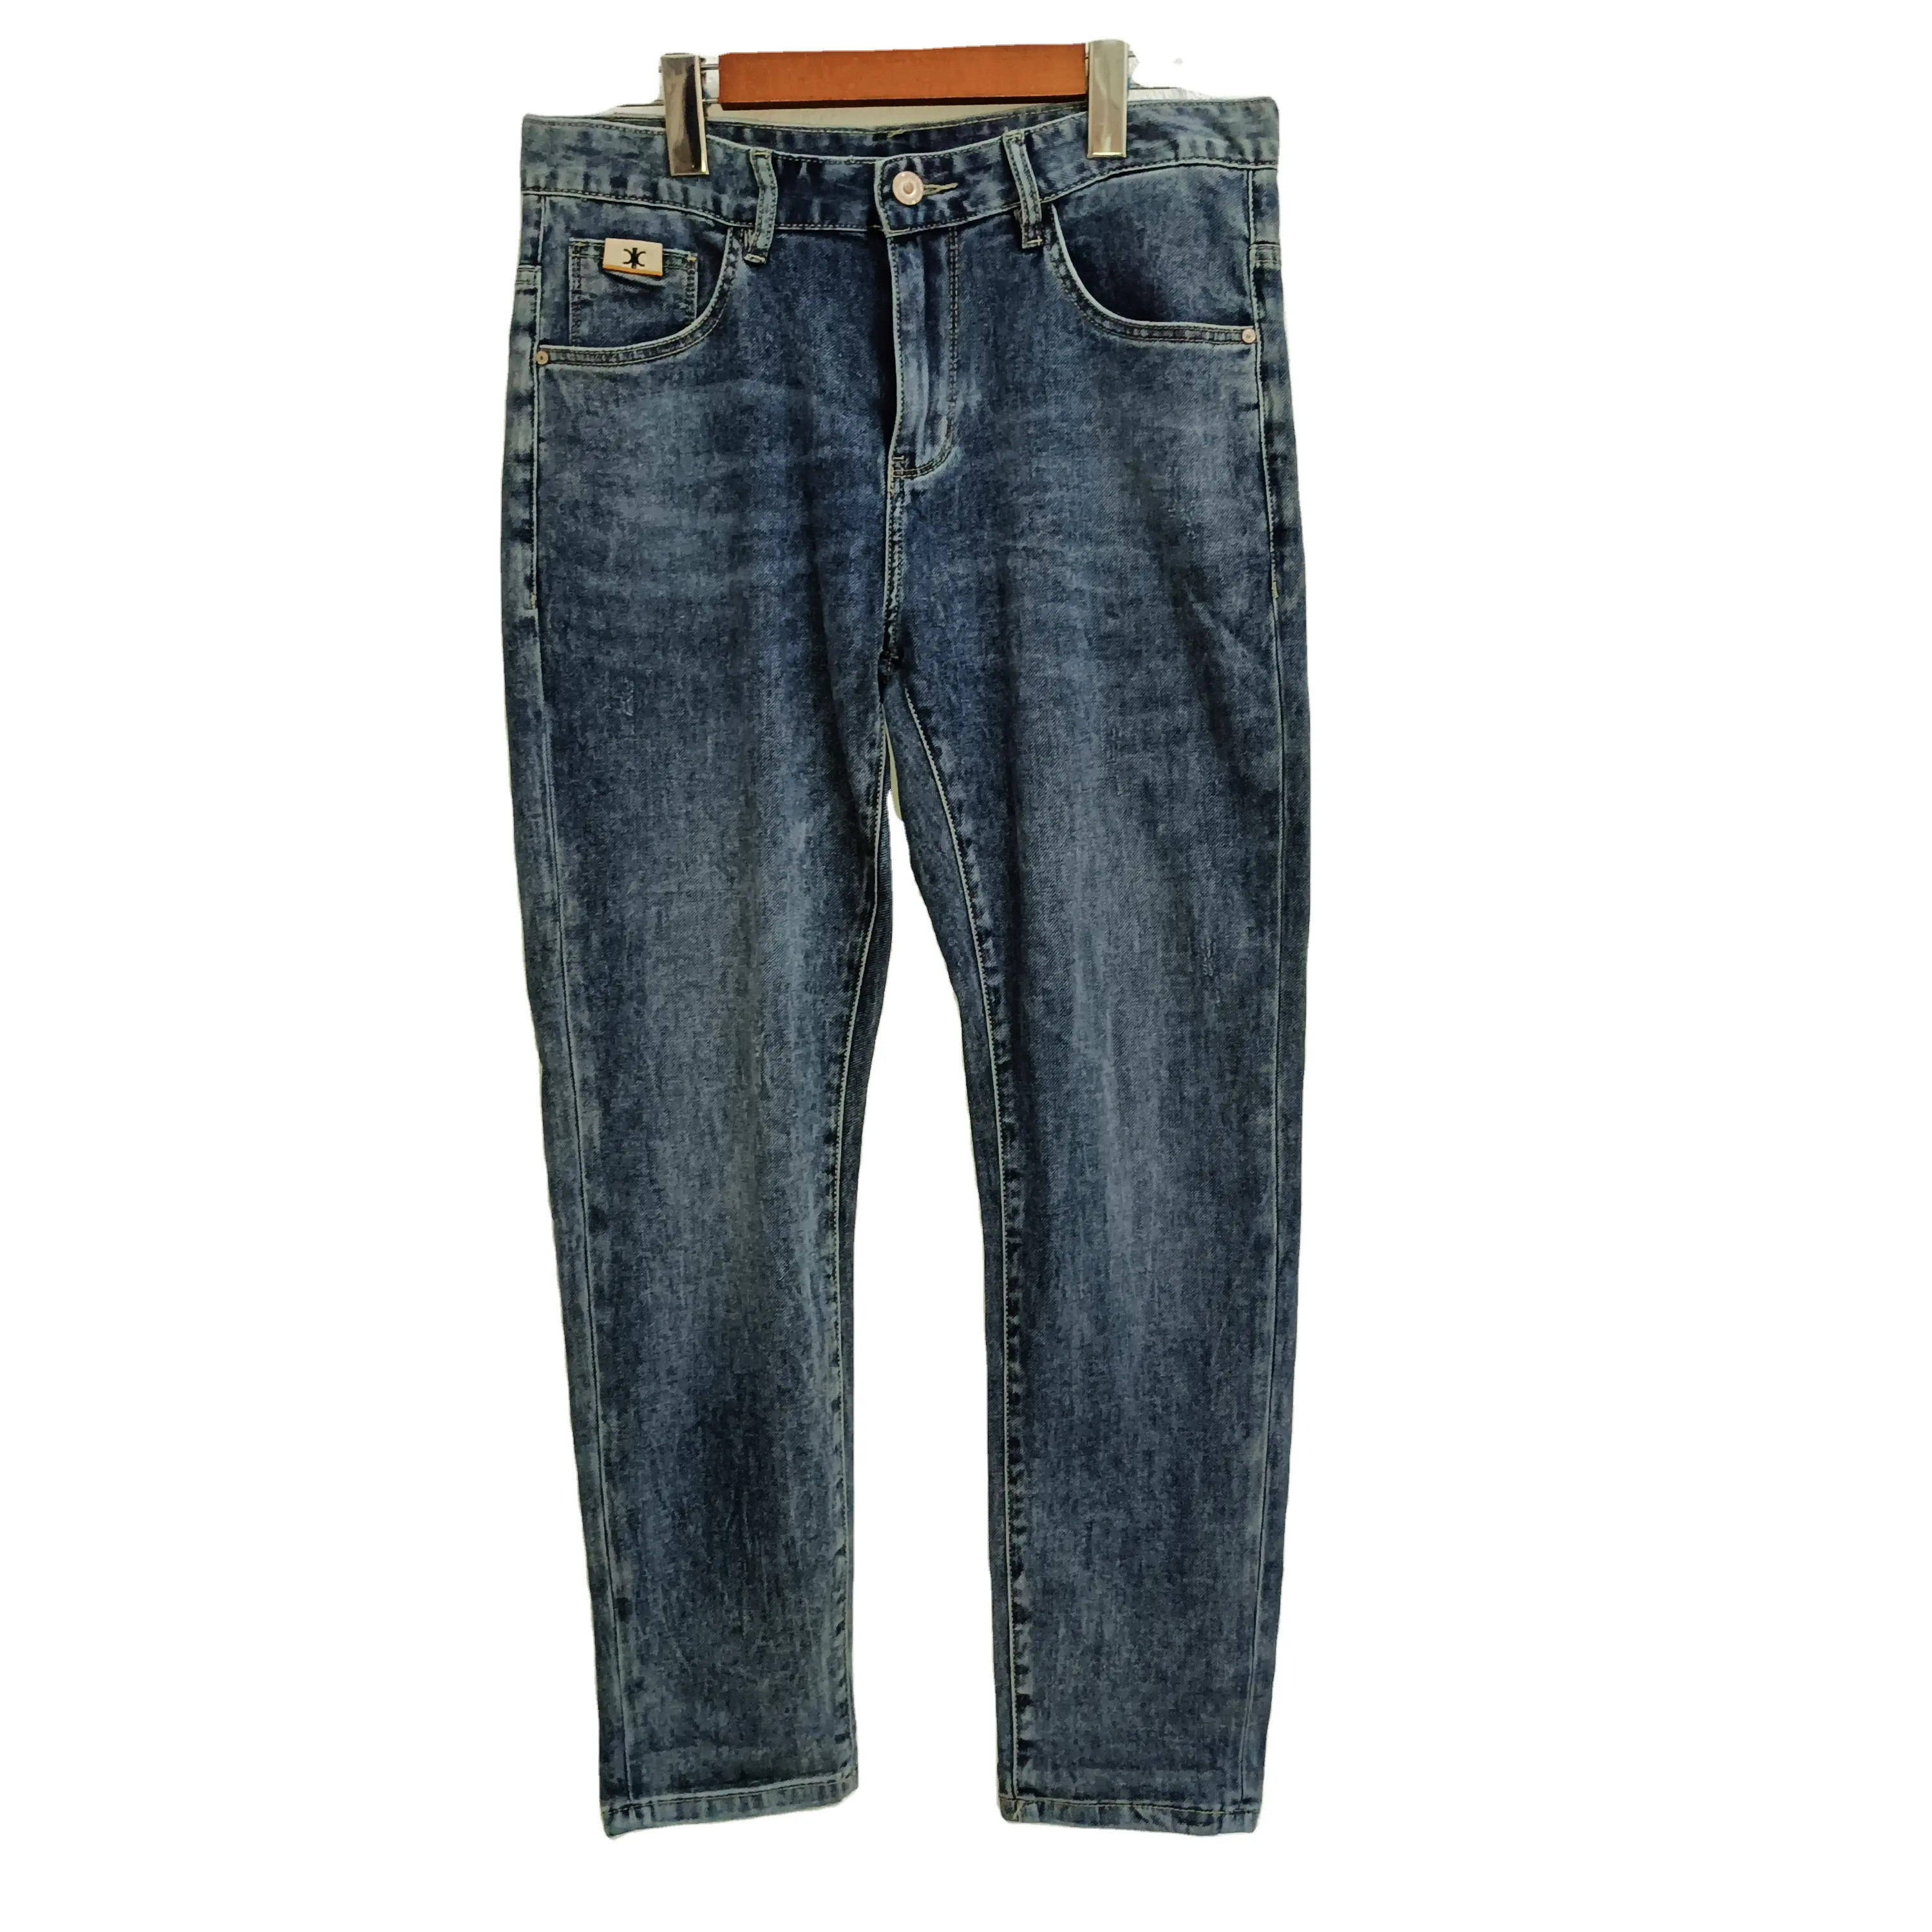 La mejor calidad, fabricante de China, venta al por mayor barato Bootcut Jeans talla 38 Jeans hombres Dubai